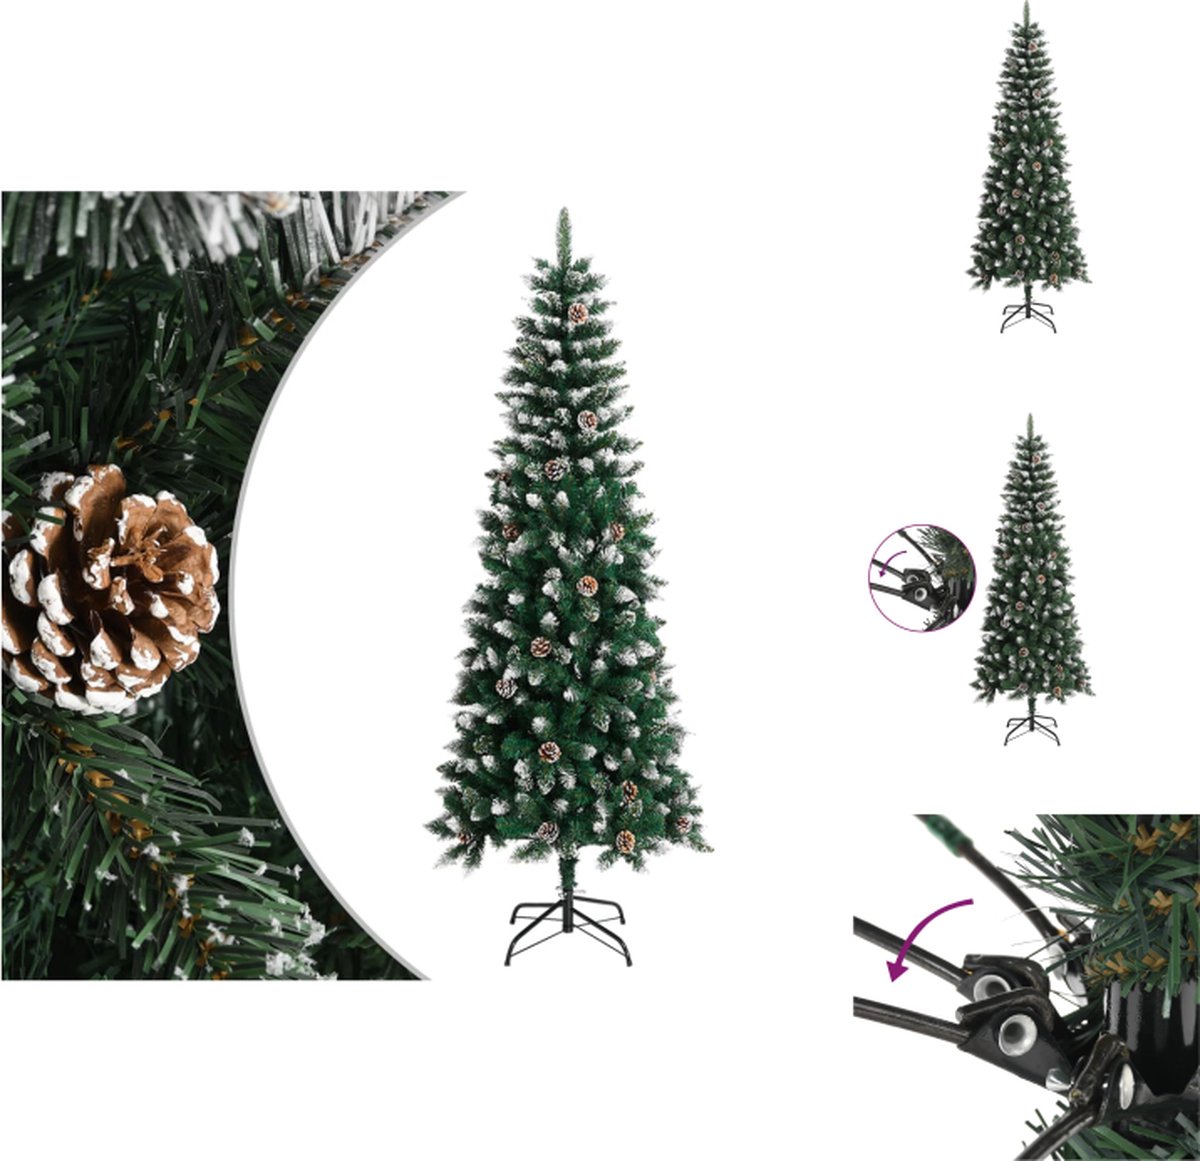 vidaXL Kunstboom - Scharnierconstructie - Volle kerstboom - Stevig standaard - Prachtige decoratie - Duurzame keuze - Groen en wit - PVC en staal - 240 cm hoog - Decoratieve kerstboom